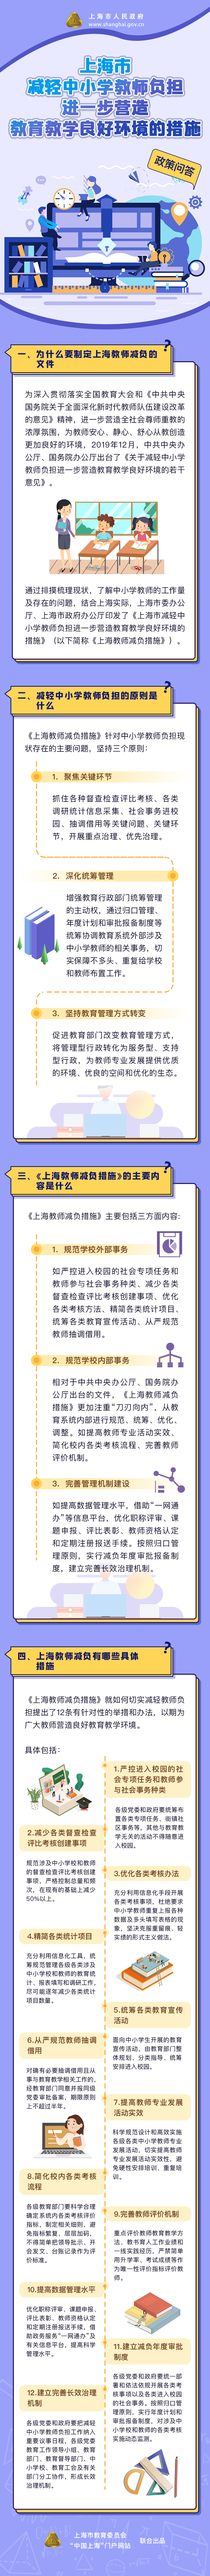 《上海市关于减轻中小学教师负担进一步营造教育教学良好环境的措施》政策问答.png